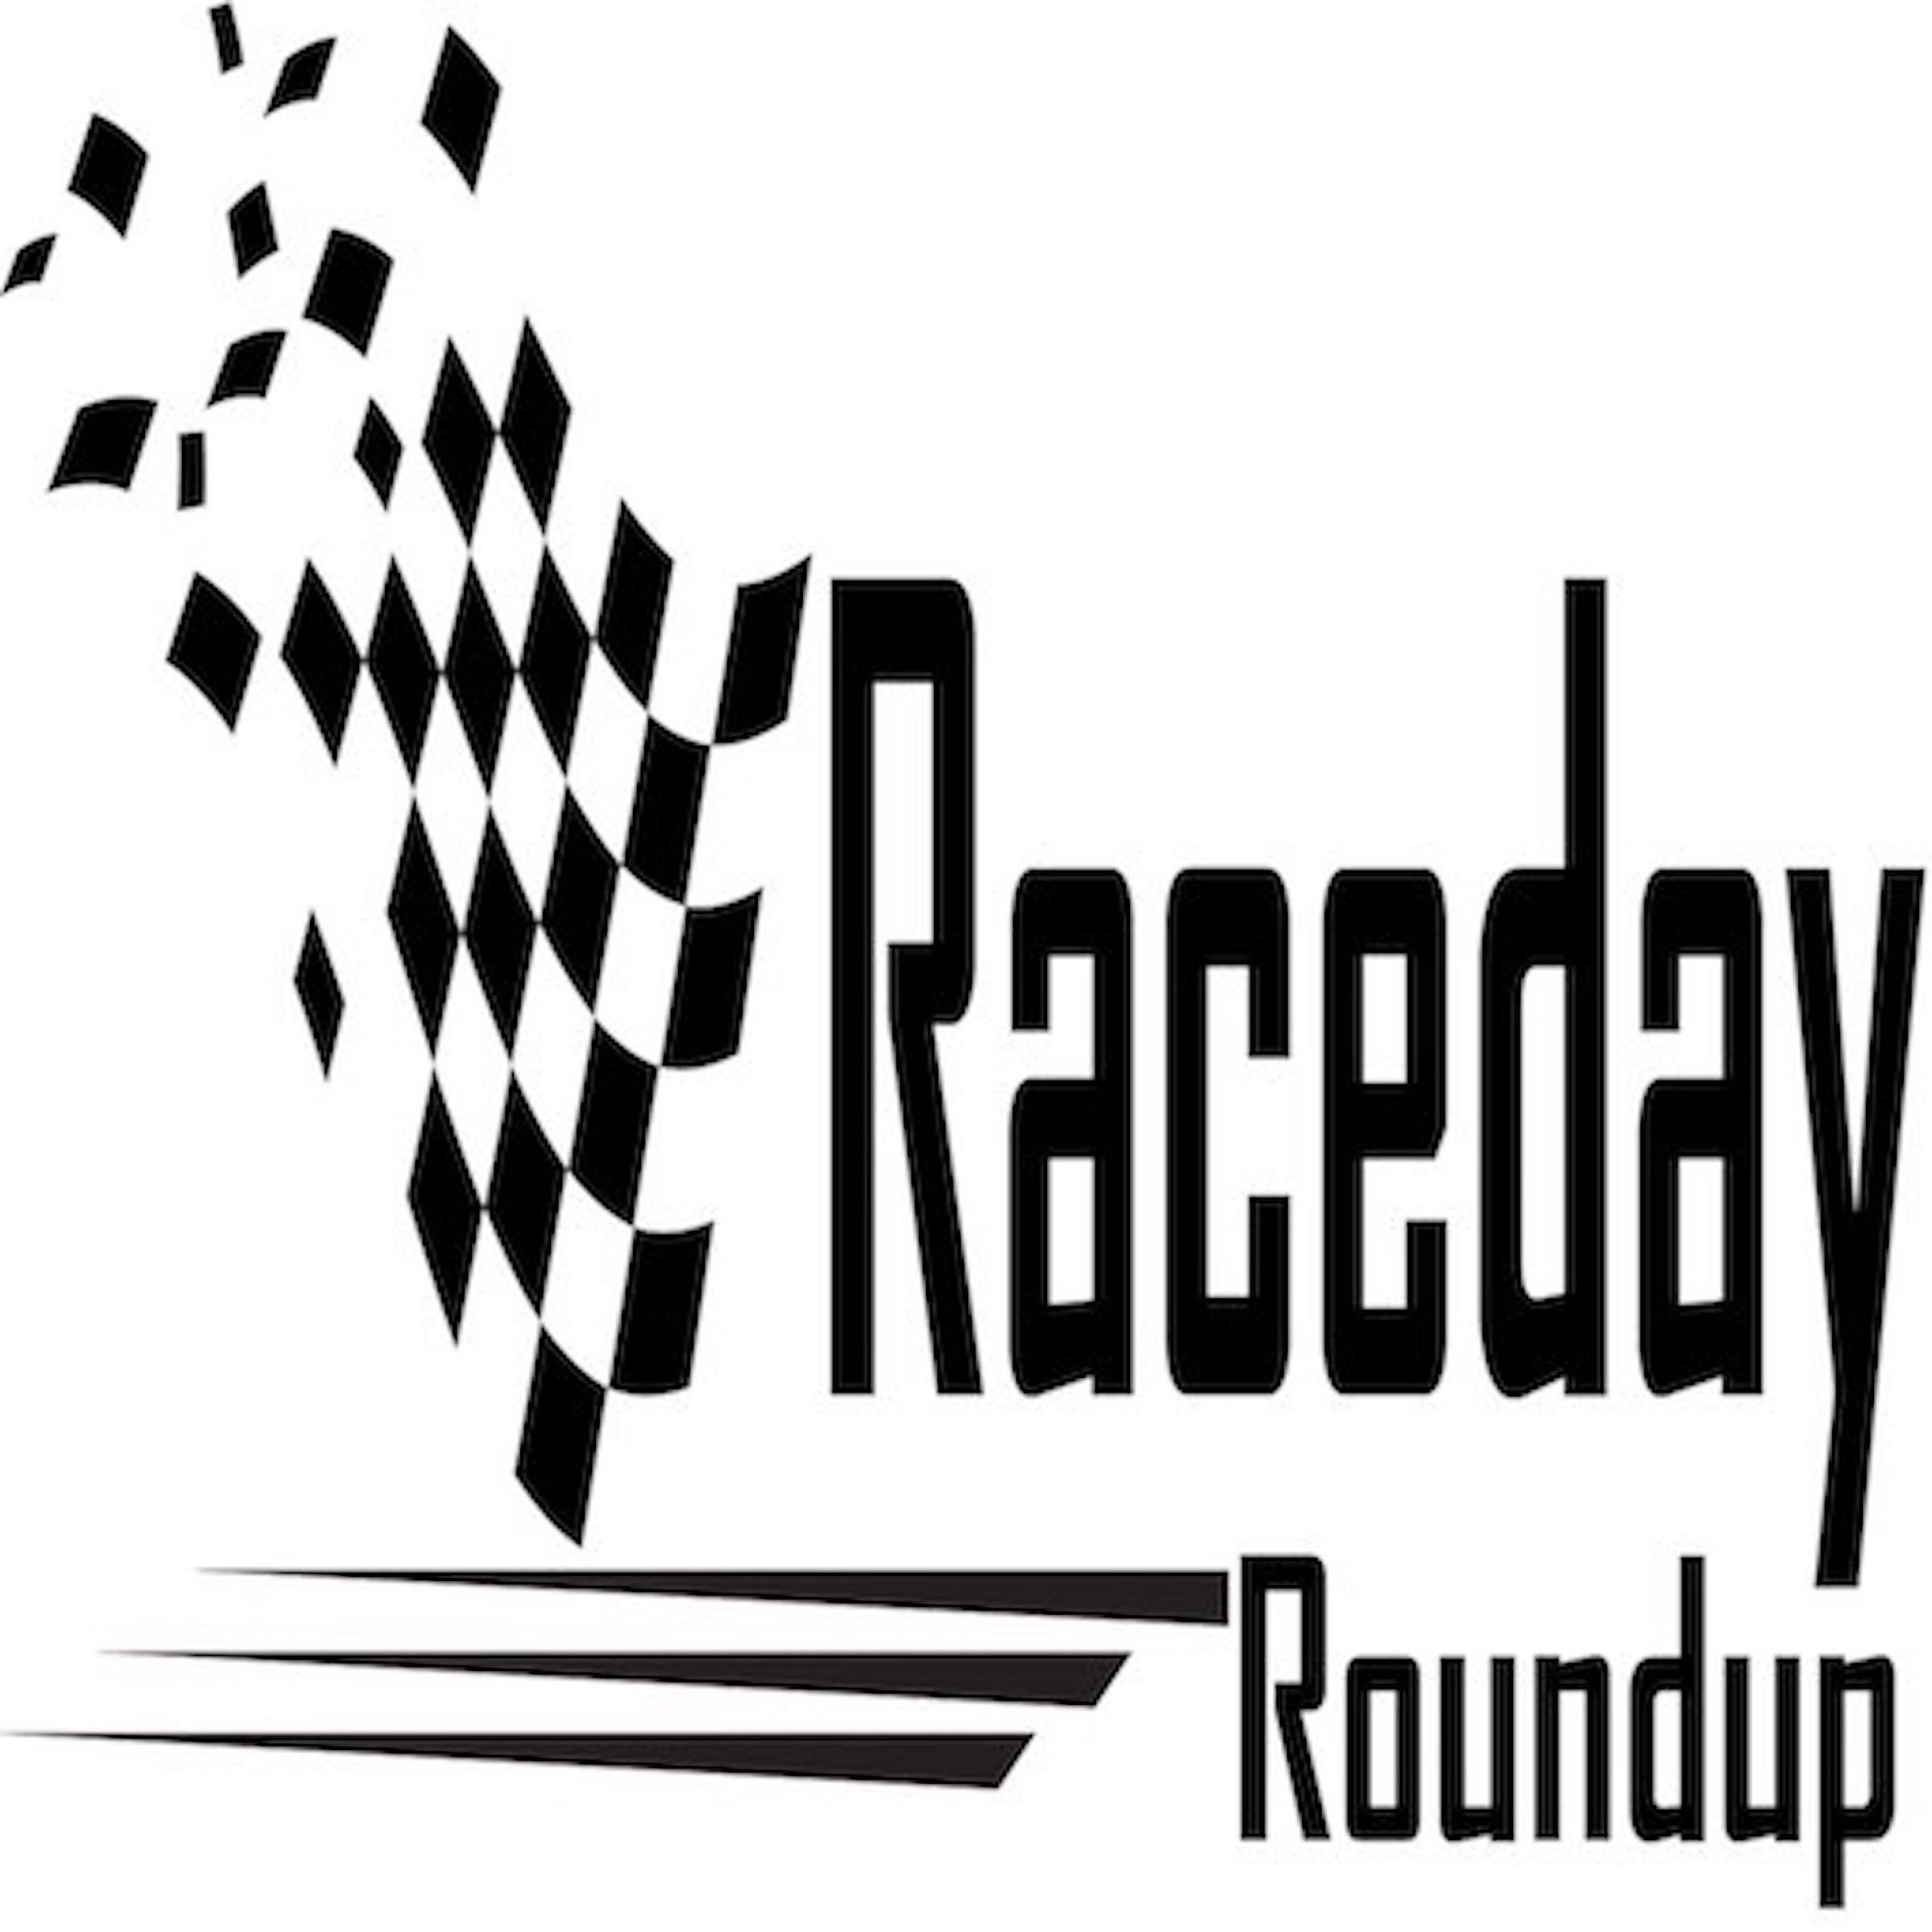 Raceday Roundup